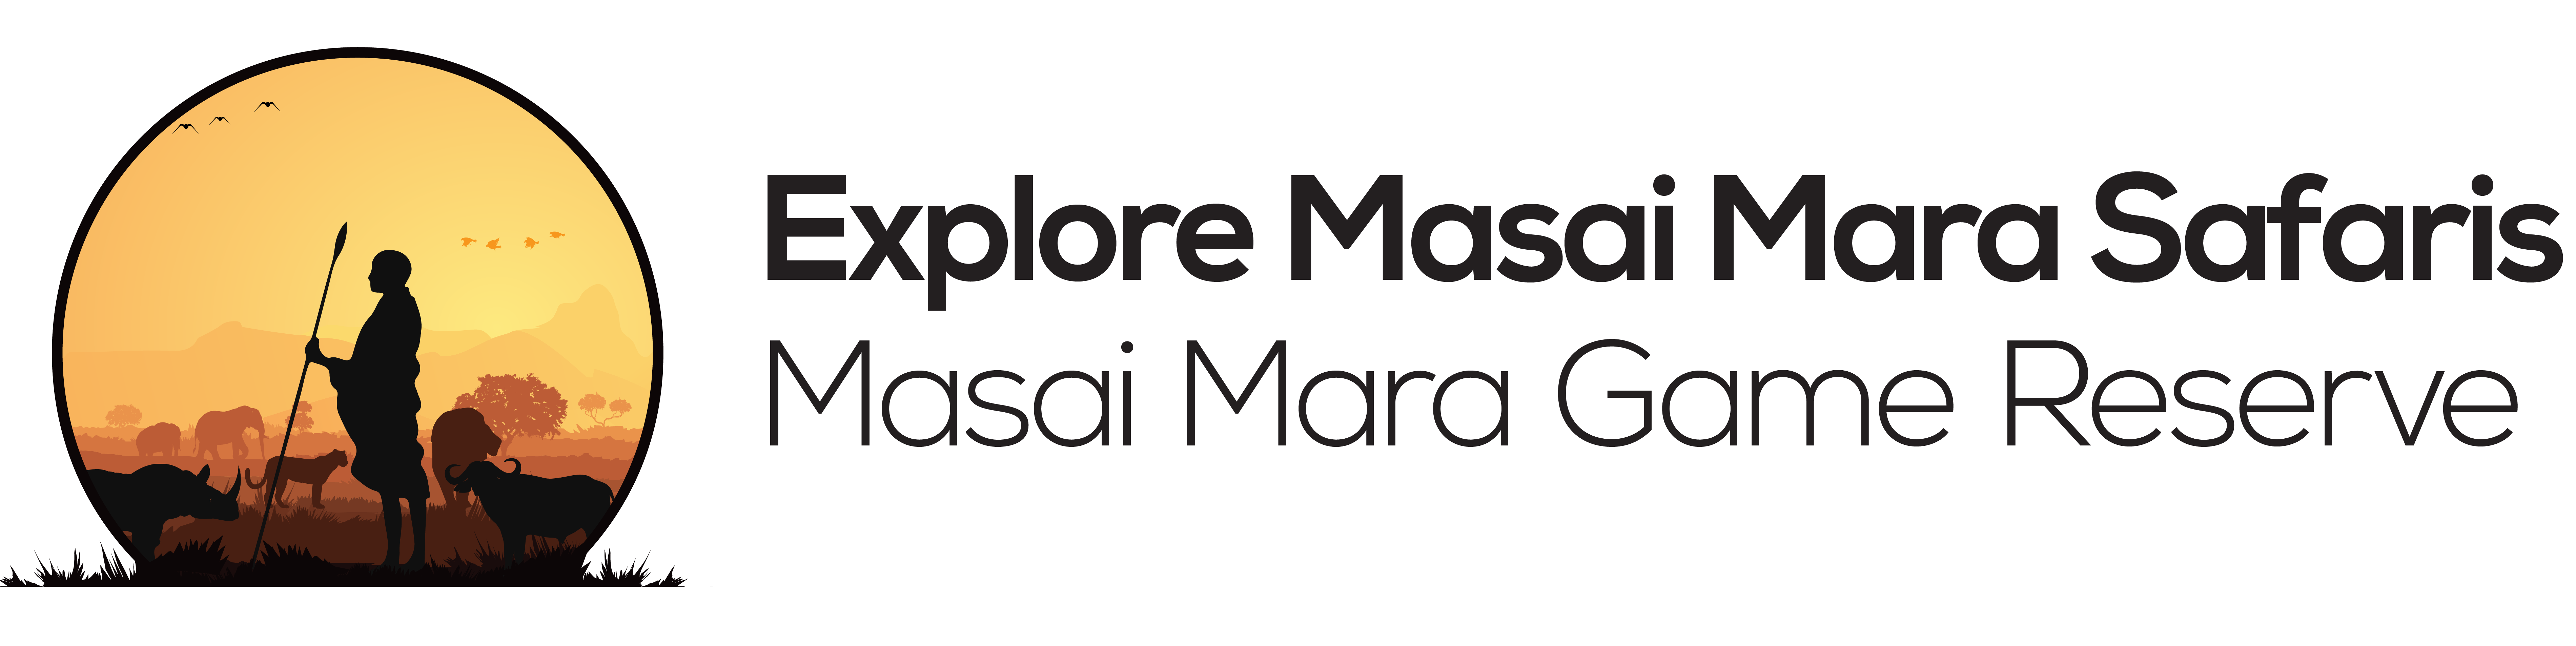 Explore masai mara | Blog News - Explore masai mara safaris , Kenya safaris